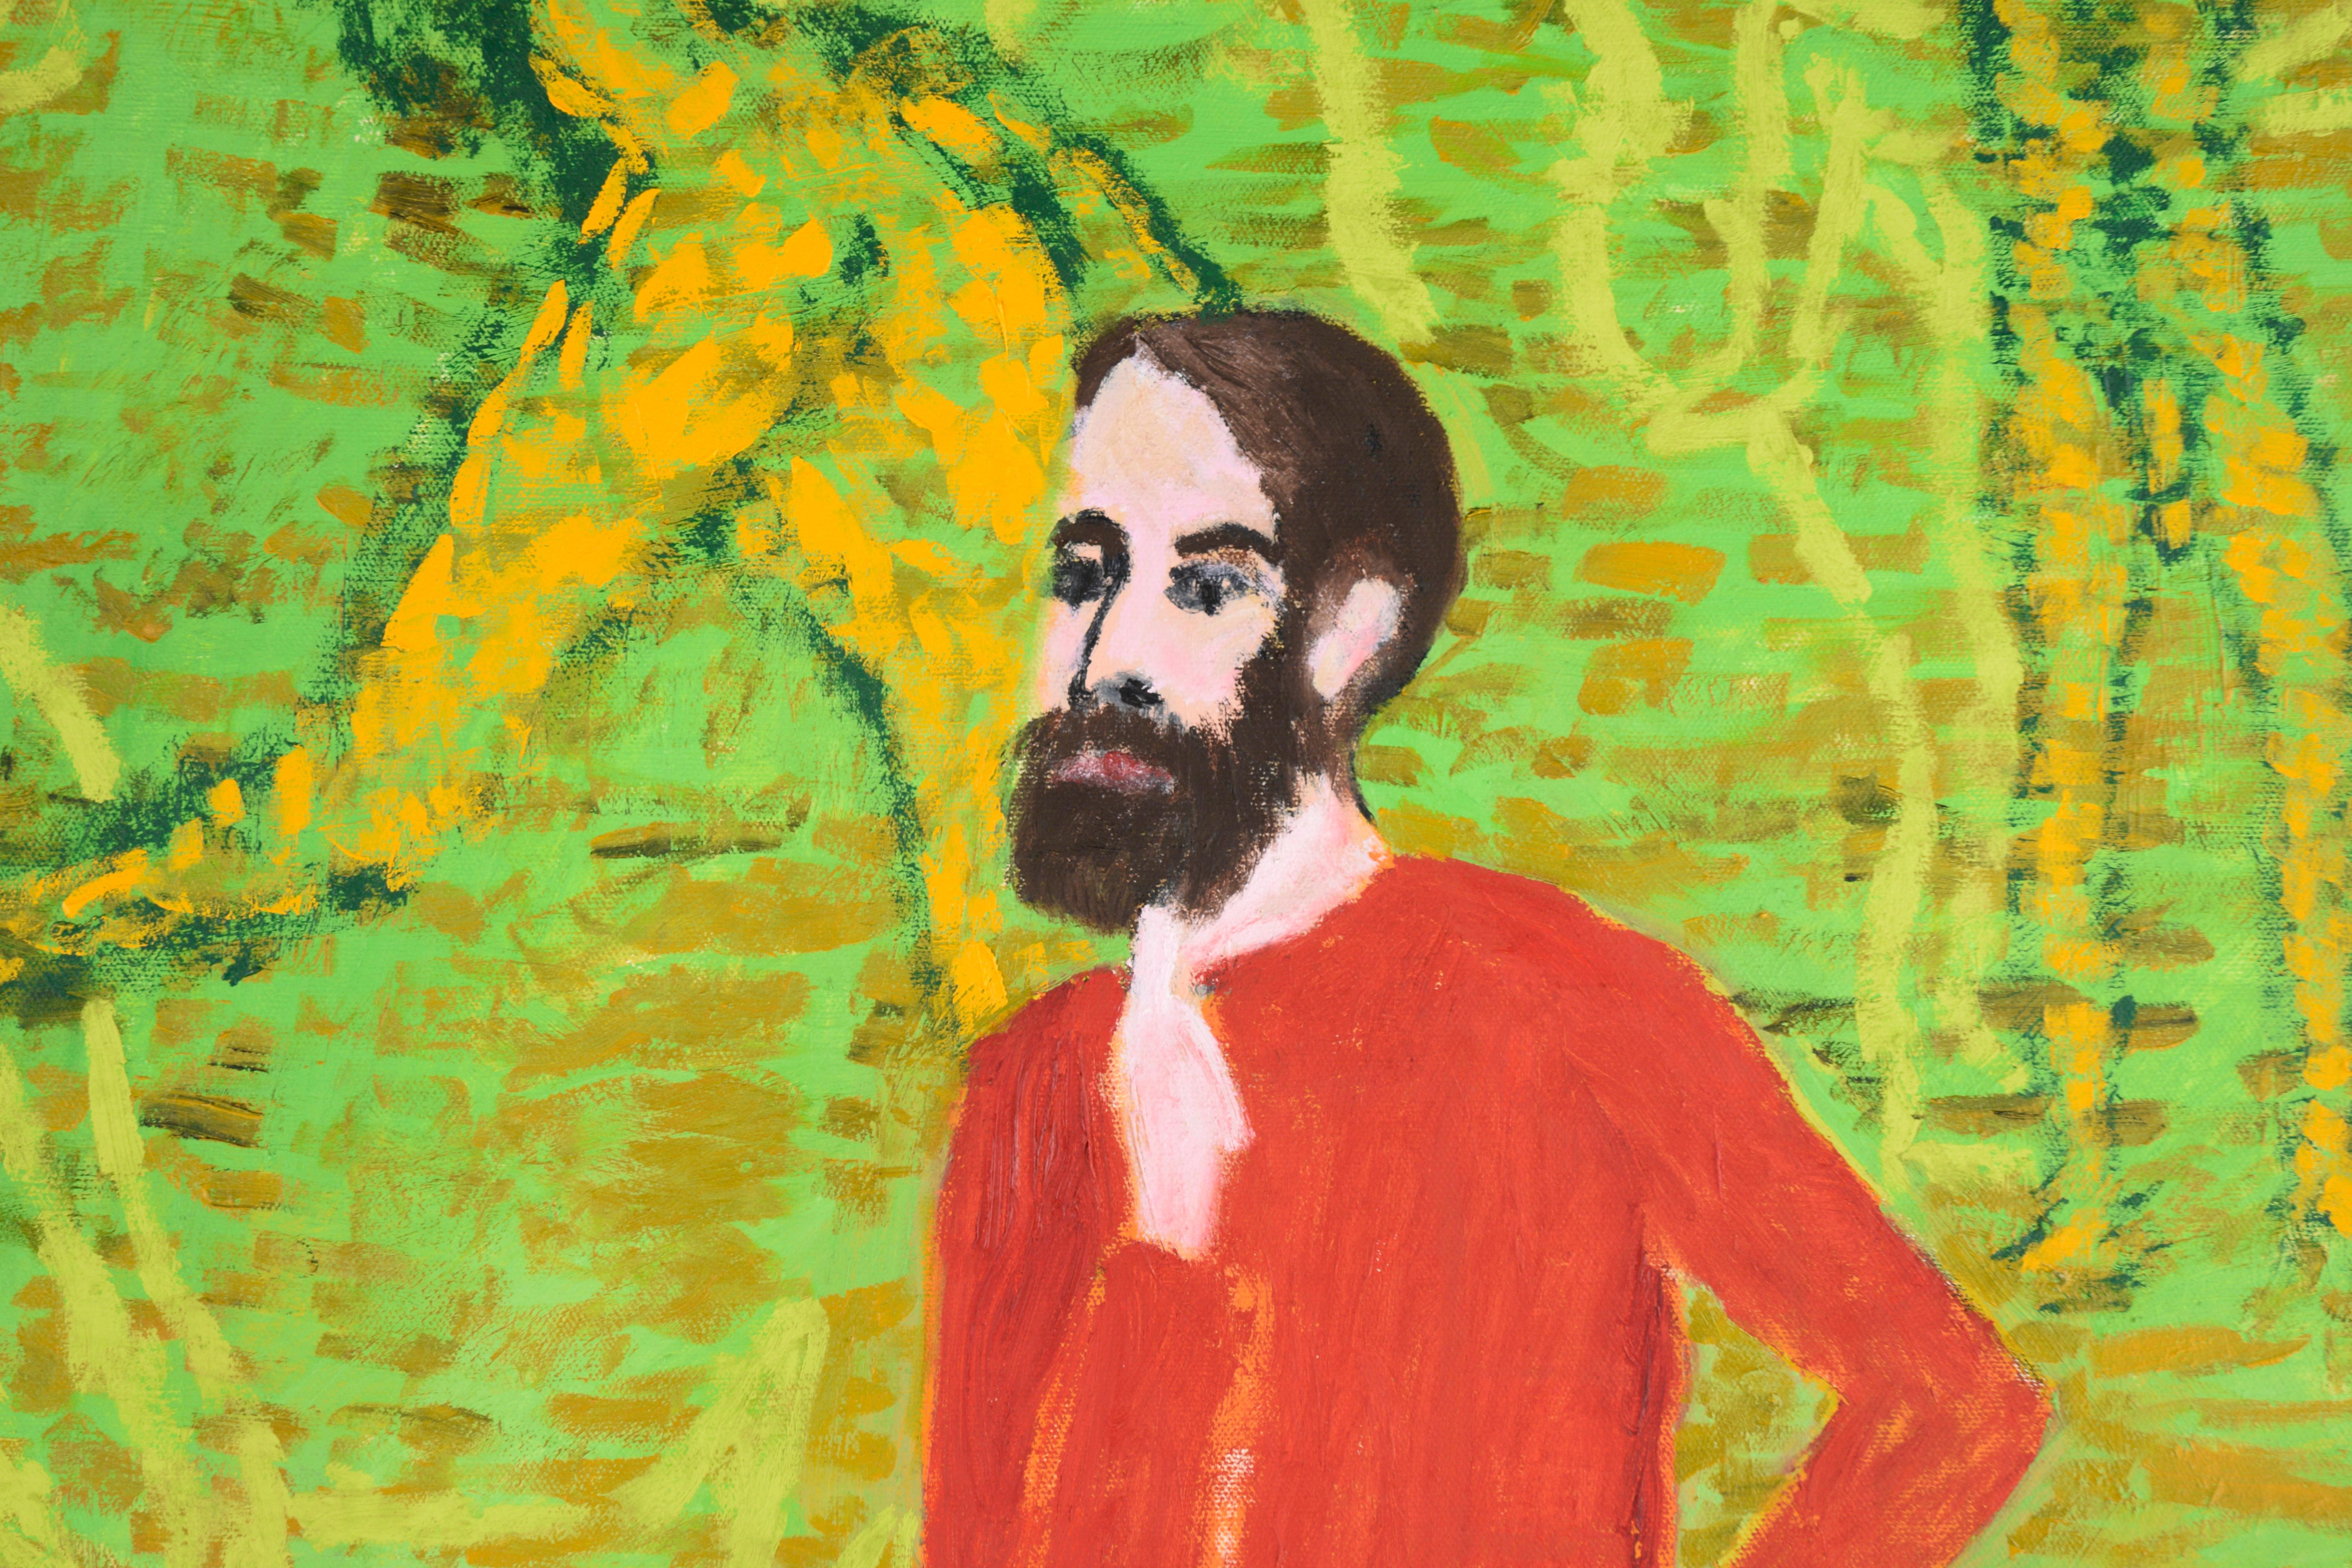 Portrait autoportrait figuratif surréaliste contemporain vert fluo, contemporain  - Contemporain Painting par Michael Pauker 